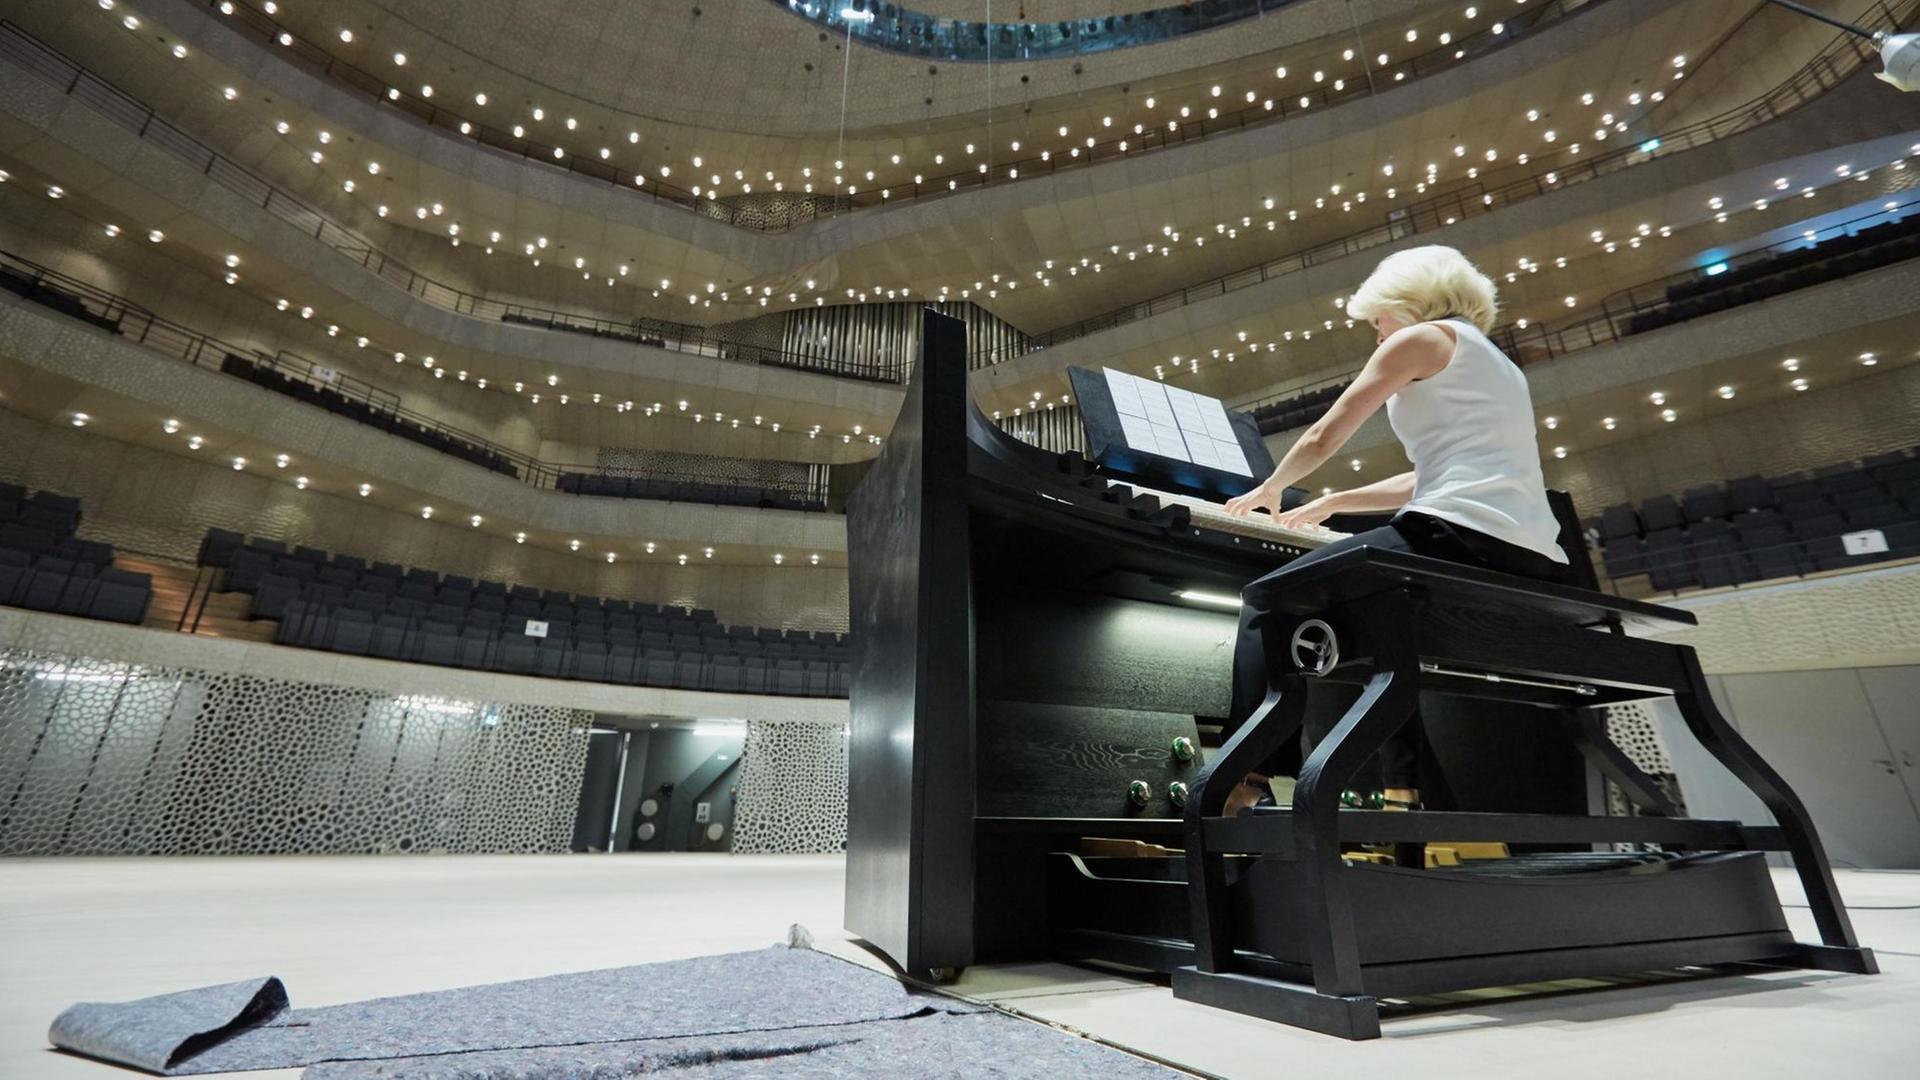 Orgel in der Elbphilharmonie Mediennummer:83916727Beschreibung:Die Titularorganistin Iveta Apkalna spielt am 16.09.2016 am Orgelspieltisch auf der Bühne im Großen Saal der Elbphilharmonie in Hamburg.